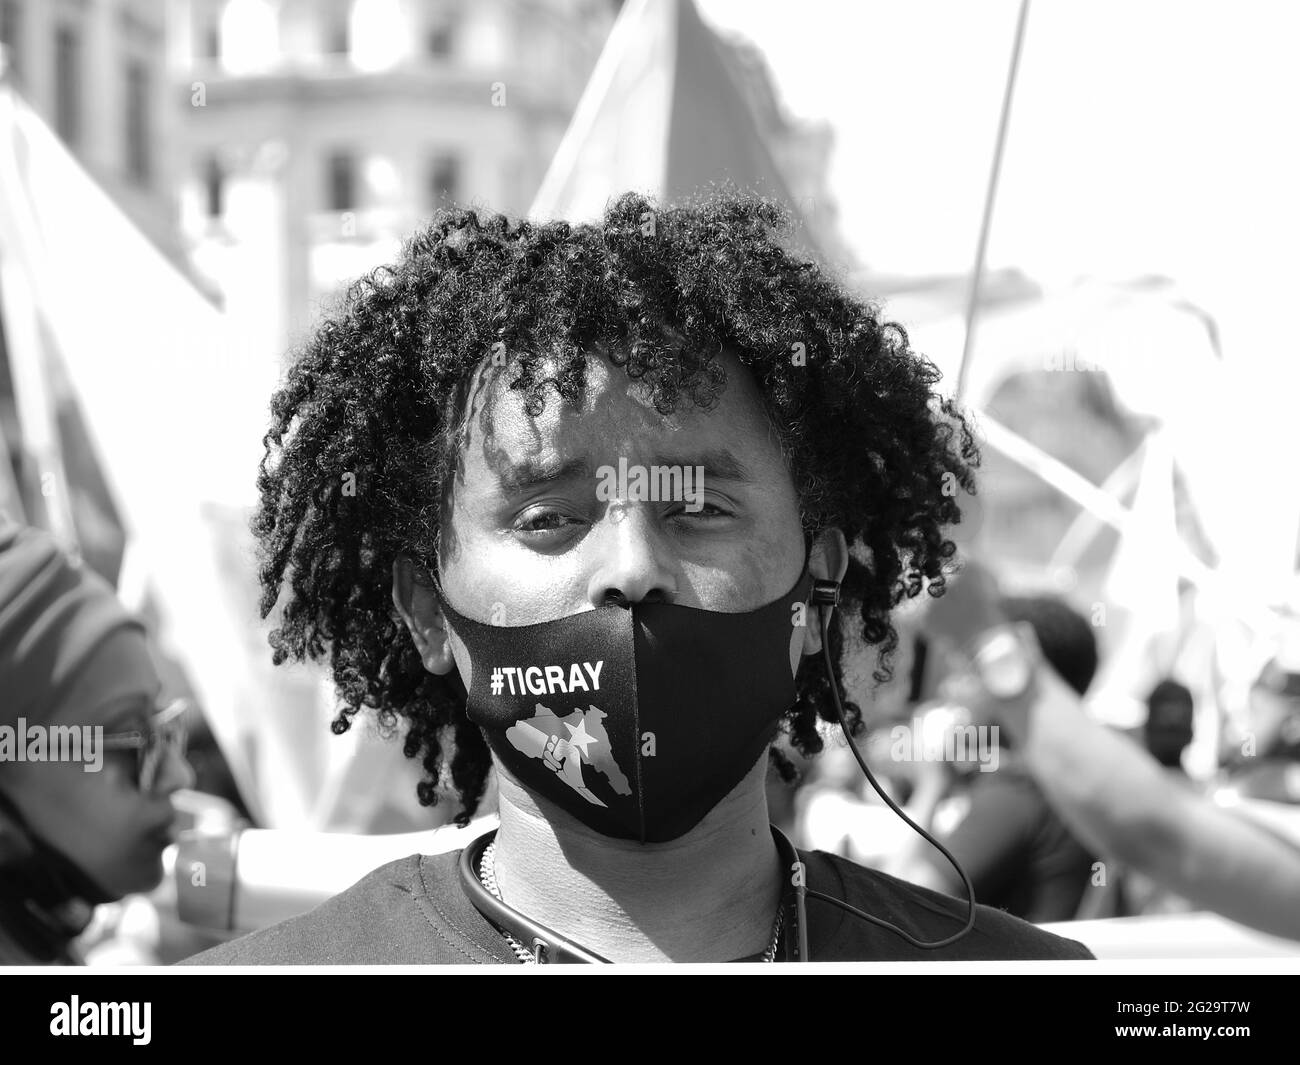 Londra, Regno Unito un attivista indossa una maschera facciale Tigray in solidarietà con la regione etiope, mentre una guerra infuria con poca copertura nei media occidentali. Foto Stock